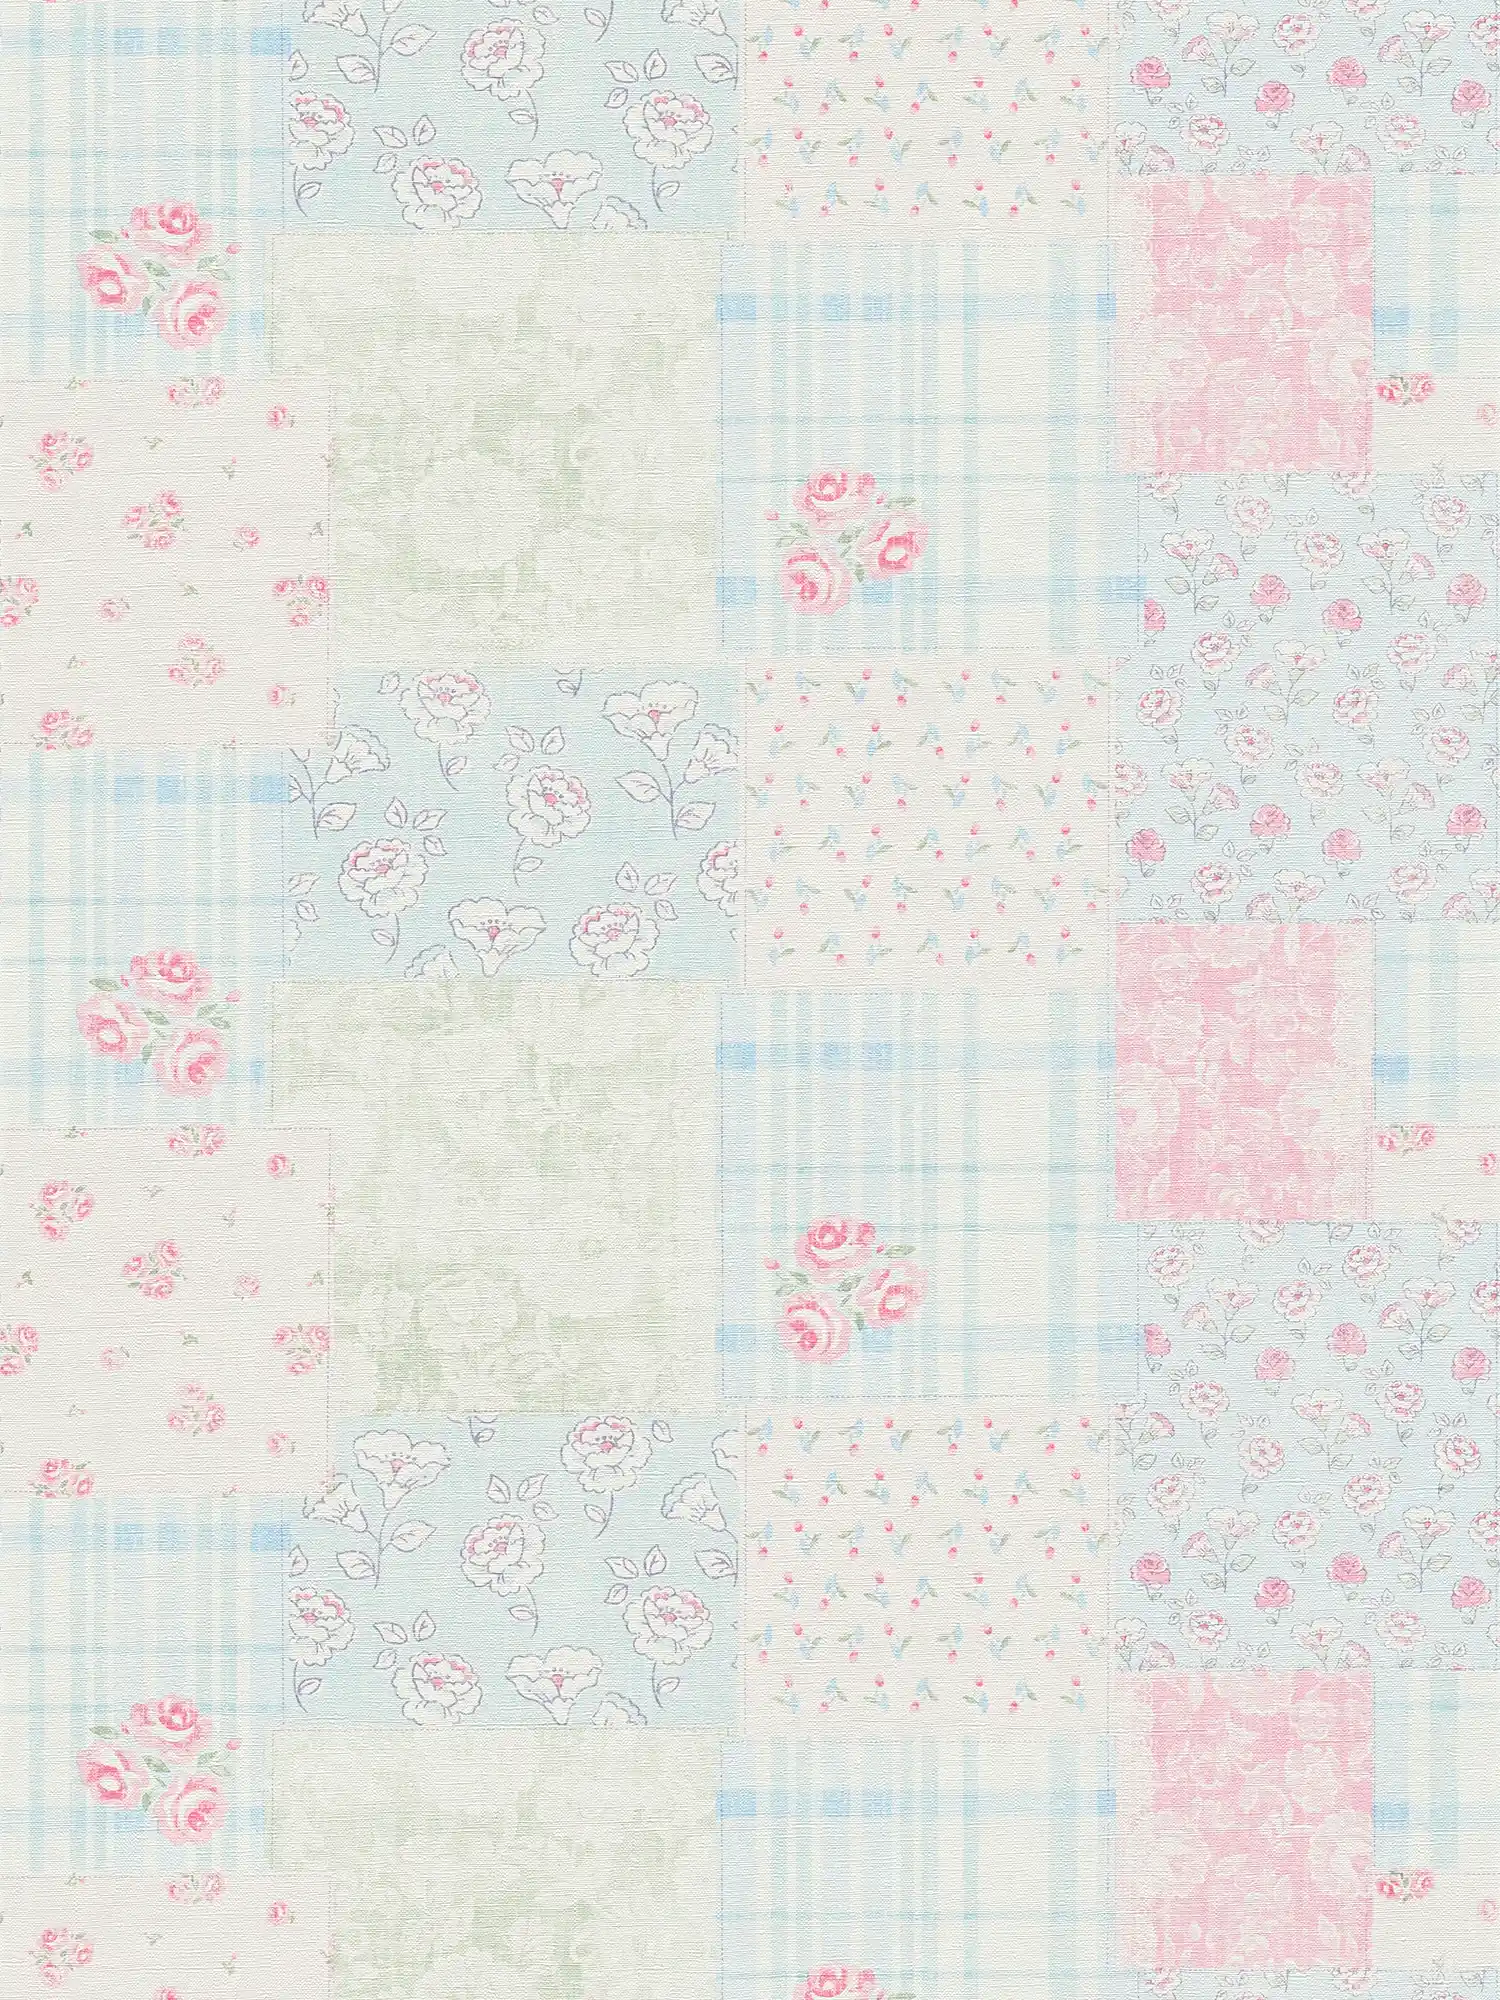 Landelijke stijl vliesbehang bloemen - blauw, roze, wit
